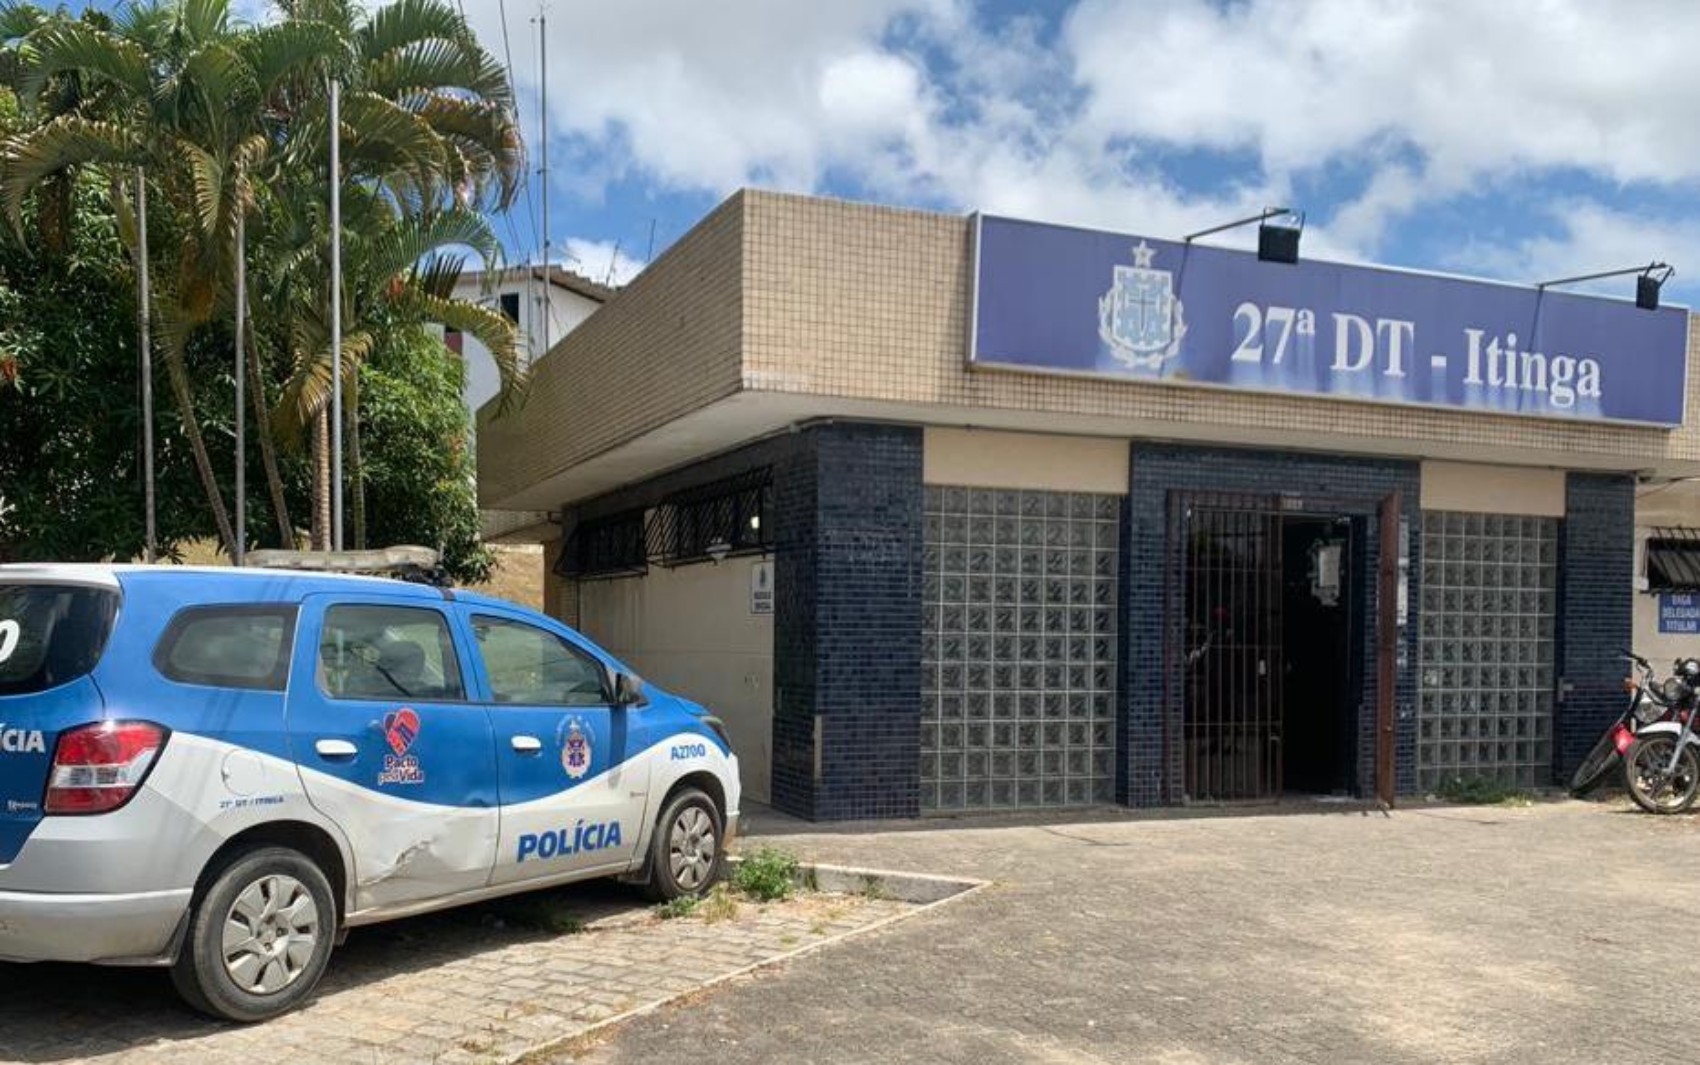 Suspeito de roubar três carros, adolescente de 17 anos é apreendido na Região Metropolitana de Salvador 